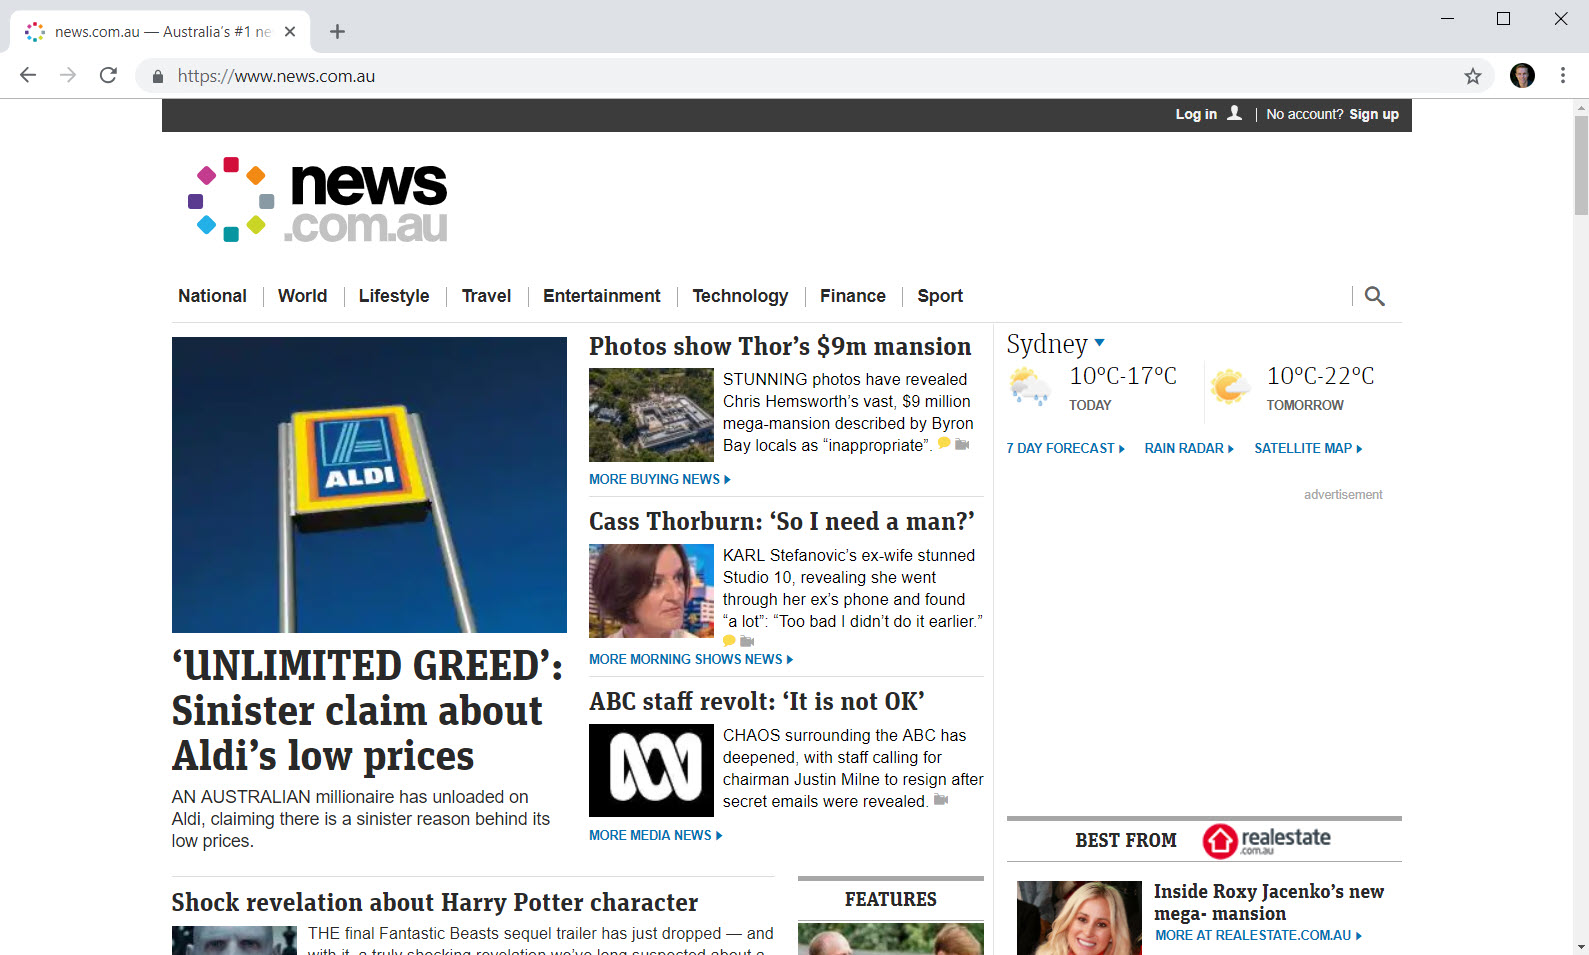 news.com.au with pi-hole